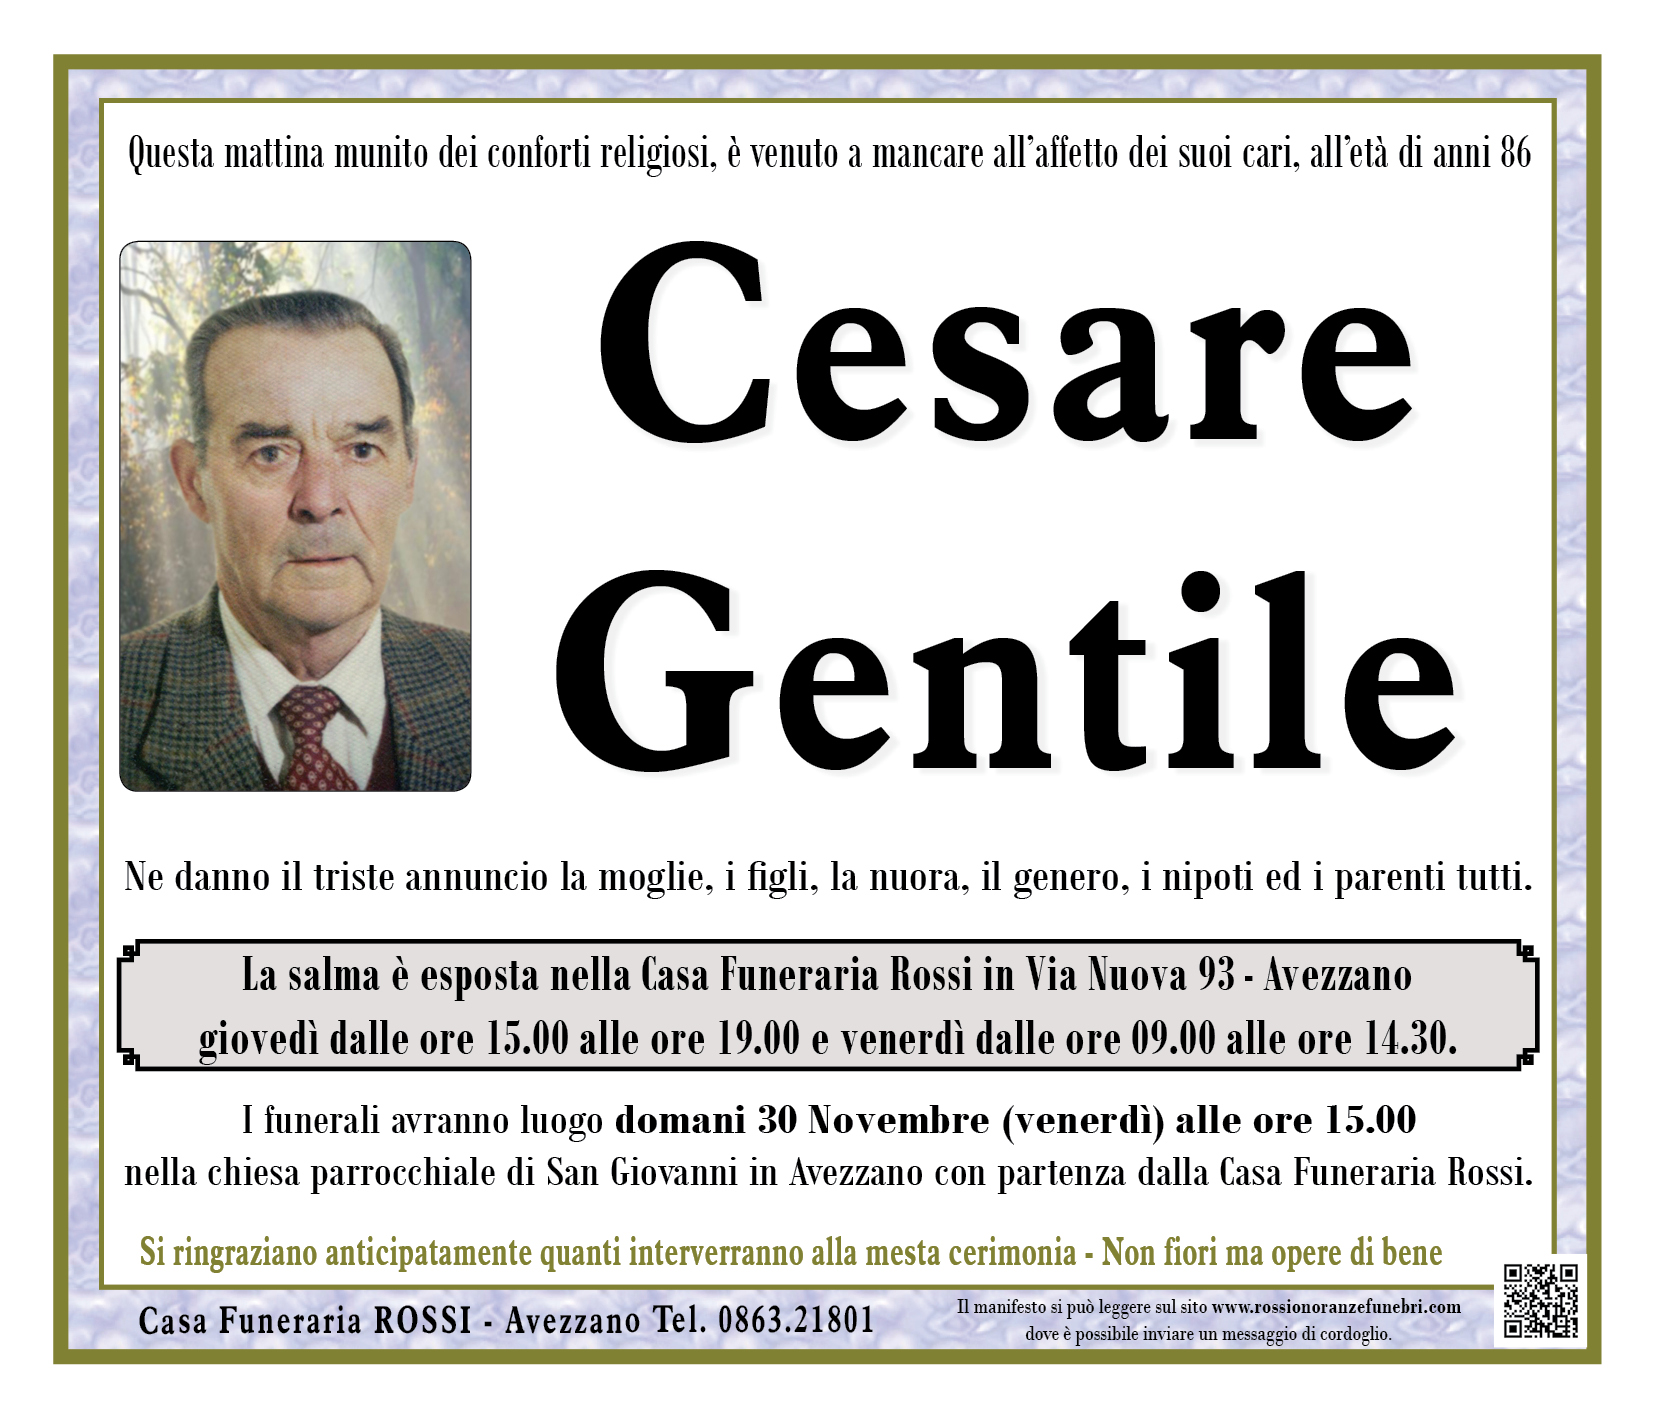 Cesare Gentile